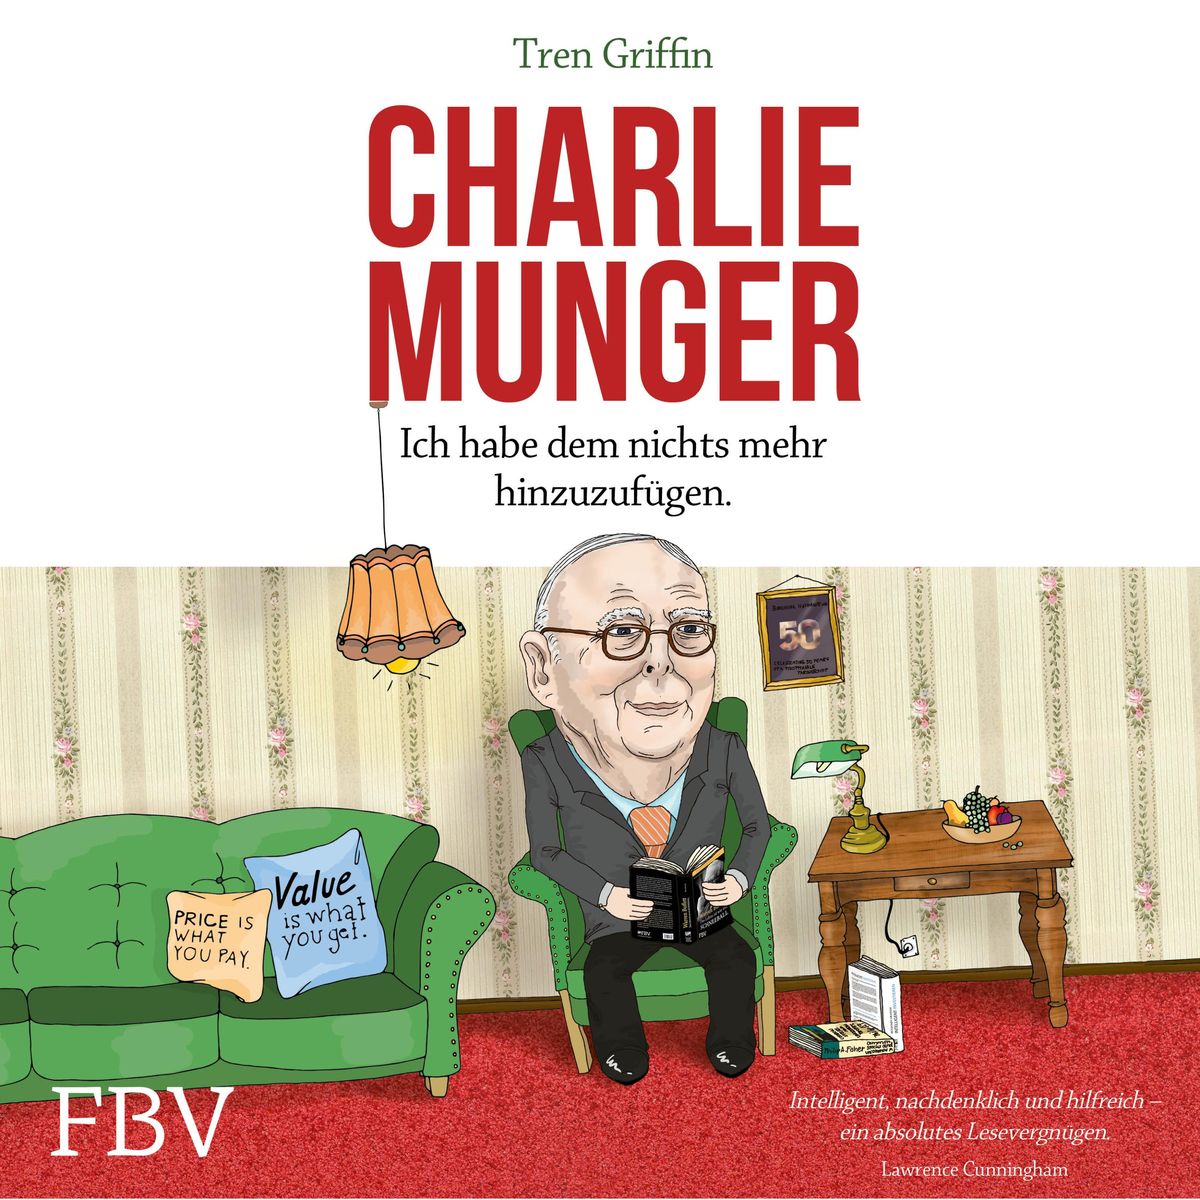 Charlie Munger von Tren Griffin - Hörbuch-Download | Thalia